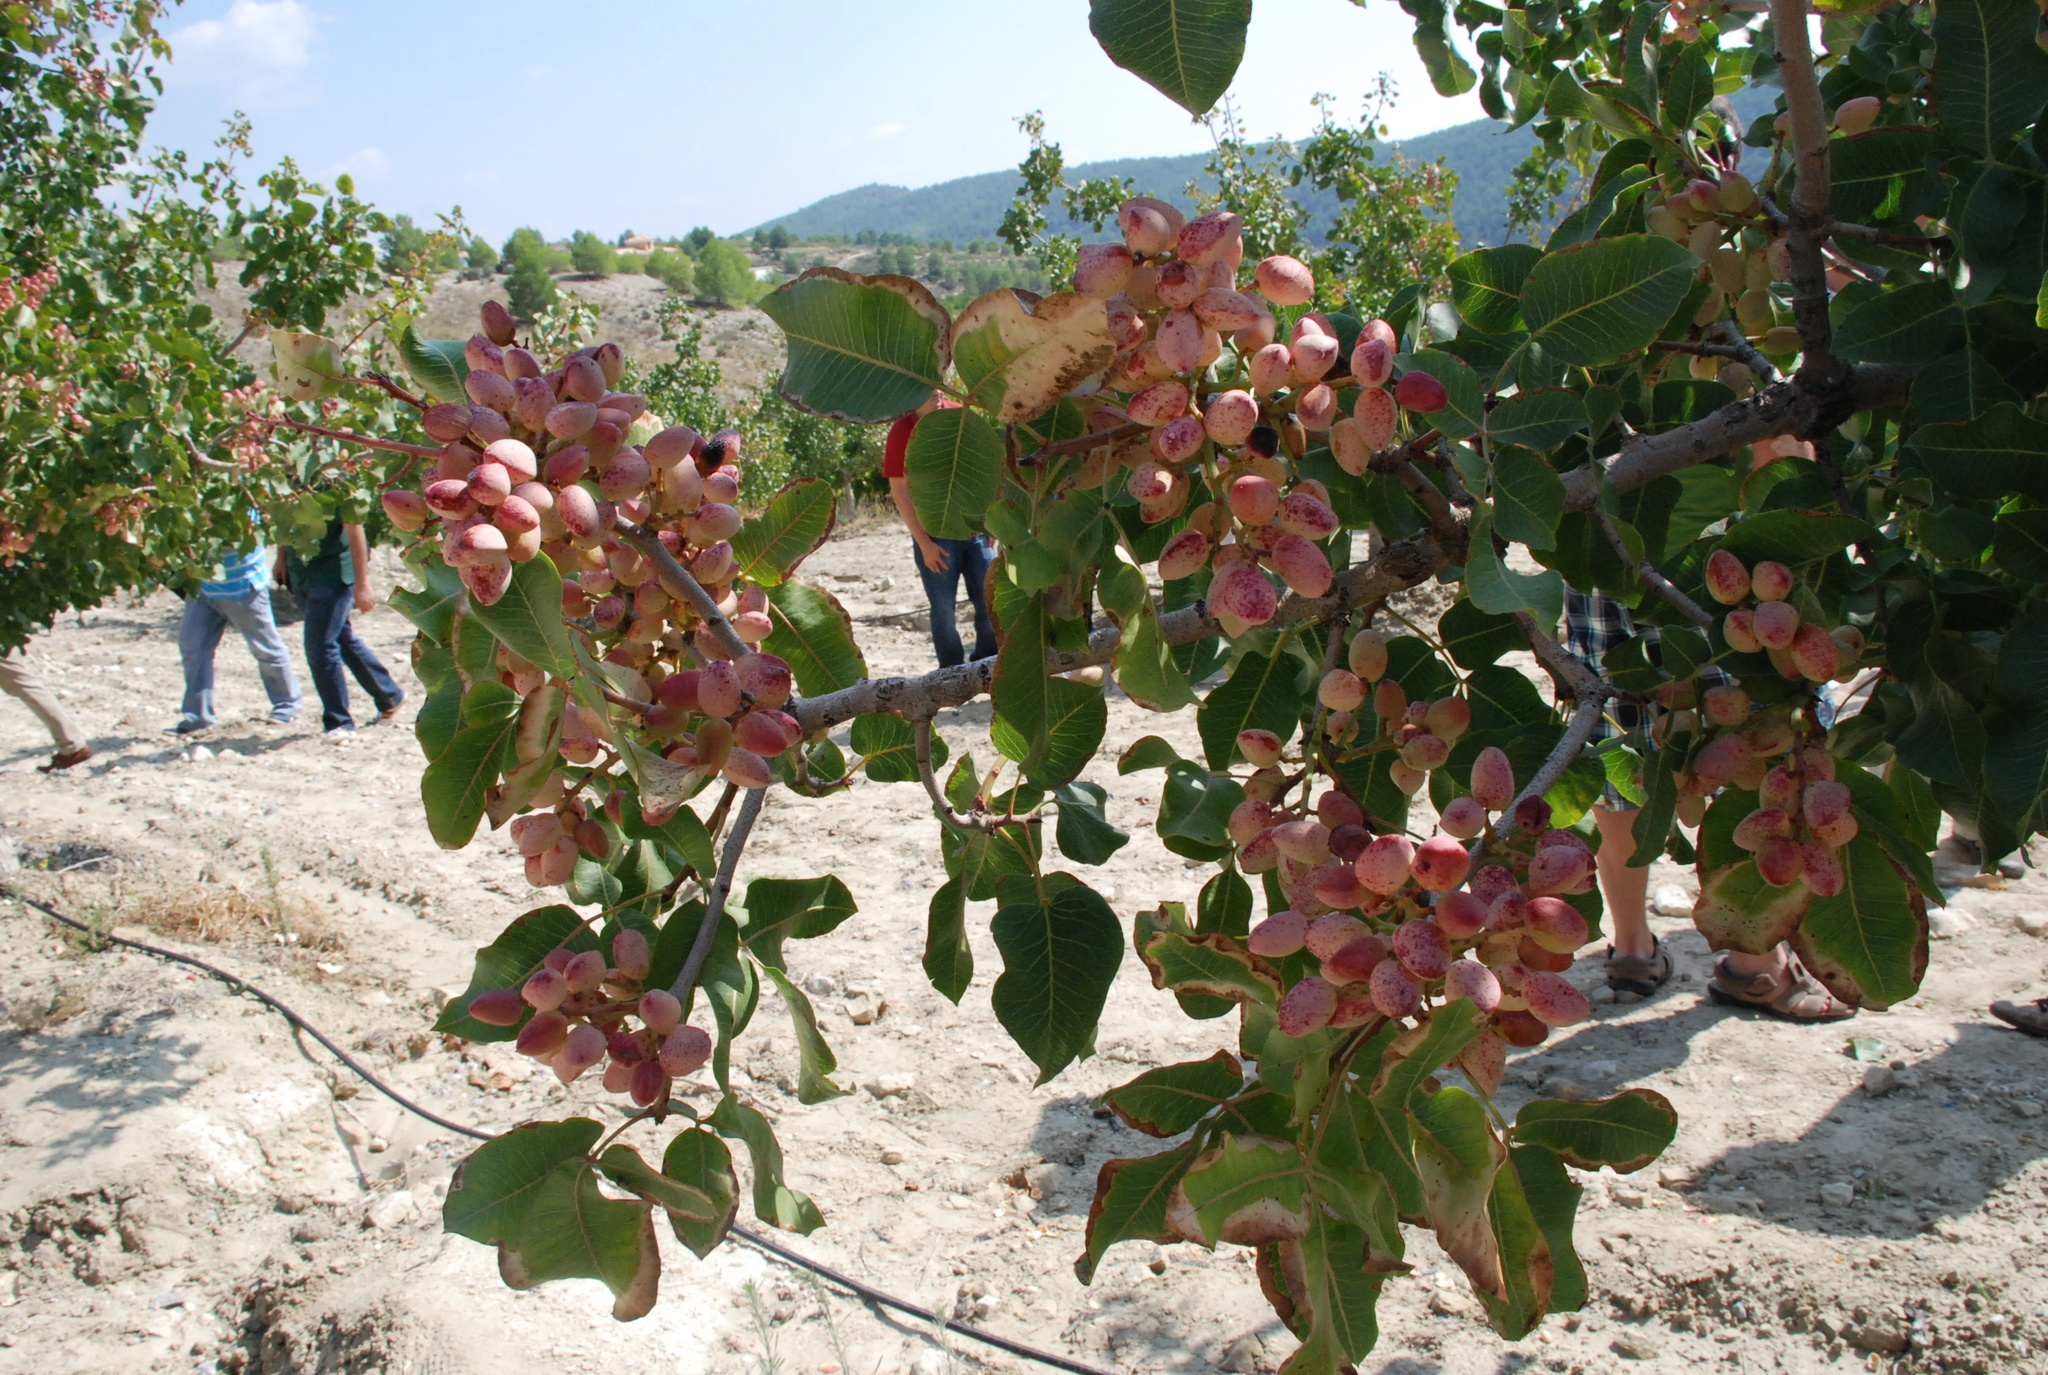 El pistacho es uno de los cultivos alternativos que permite a los agricultores de las zonas altas de la Región combatir el despoblamiento rural